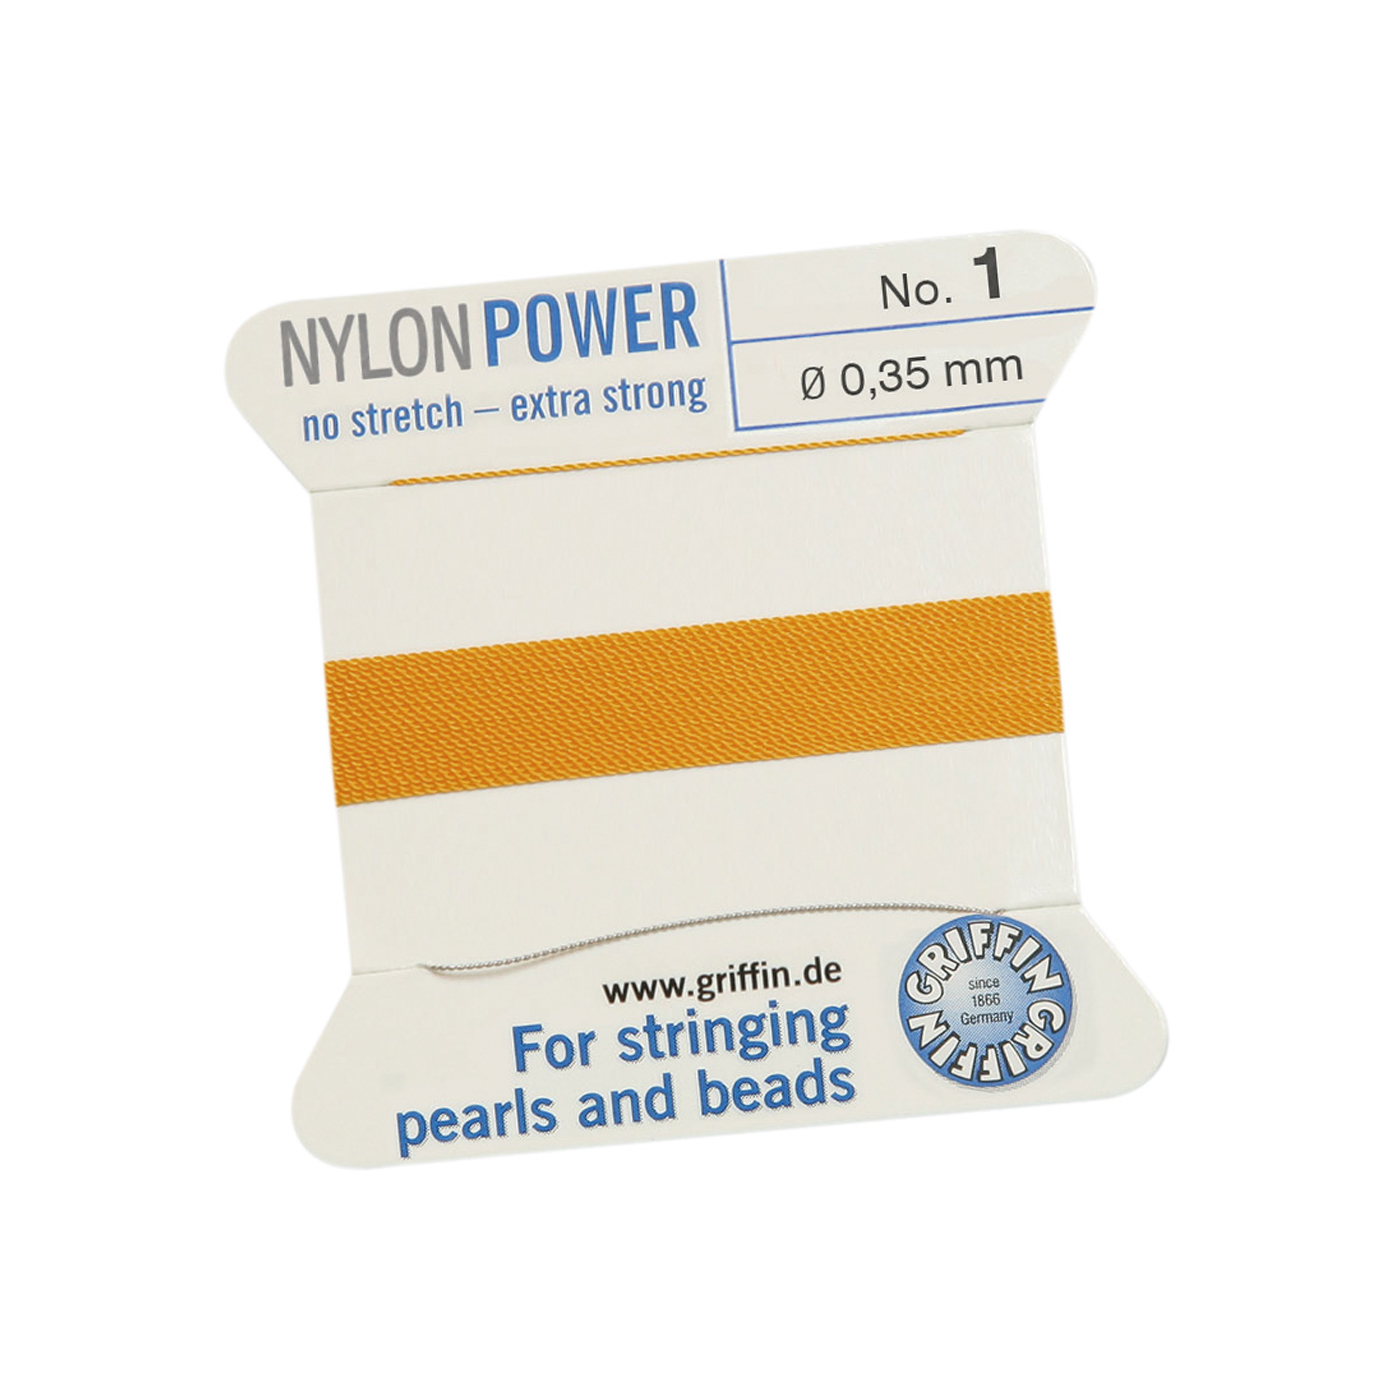 Bead Cord NylonPower, Dark Yellow, No. 1 - 2 m